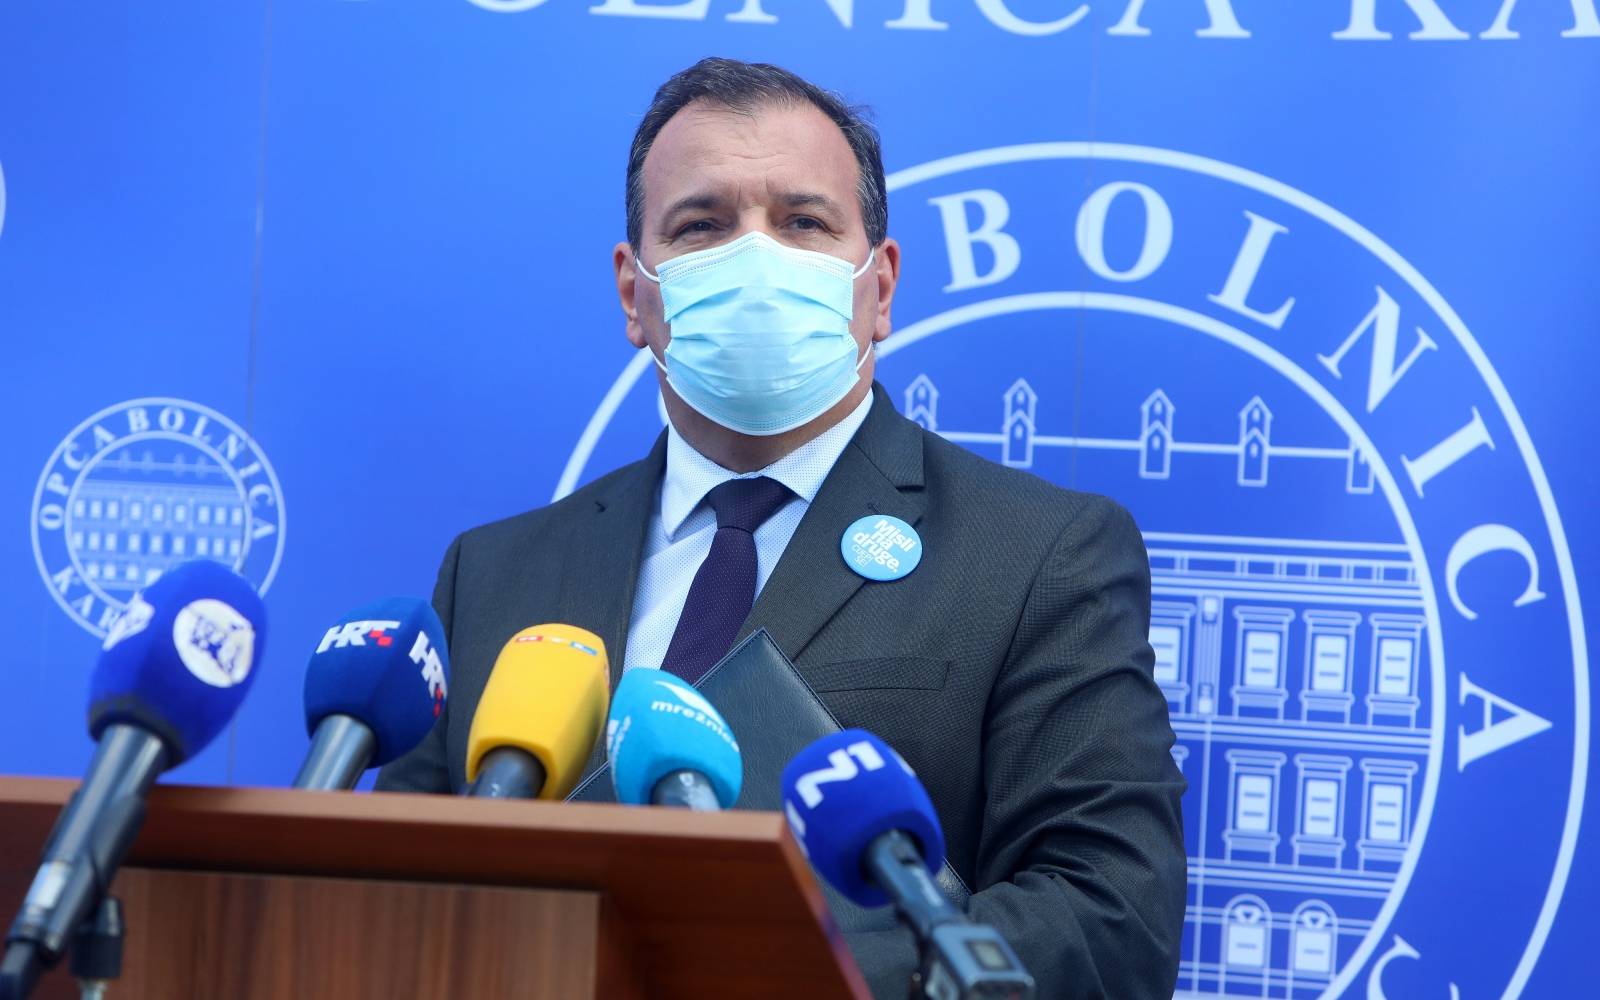 Vili Beroš dao izjavu nakon službenog posjeta Općoj bolnici Karlovac